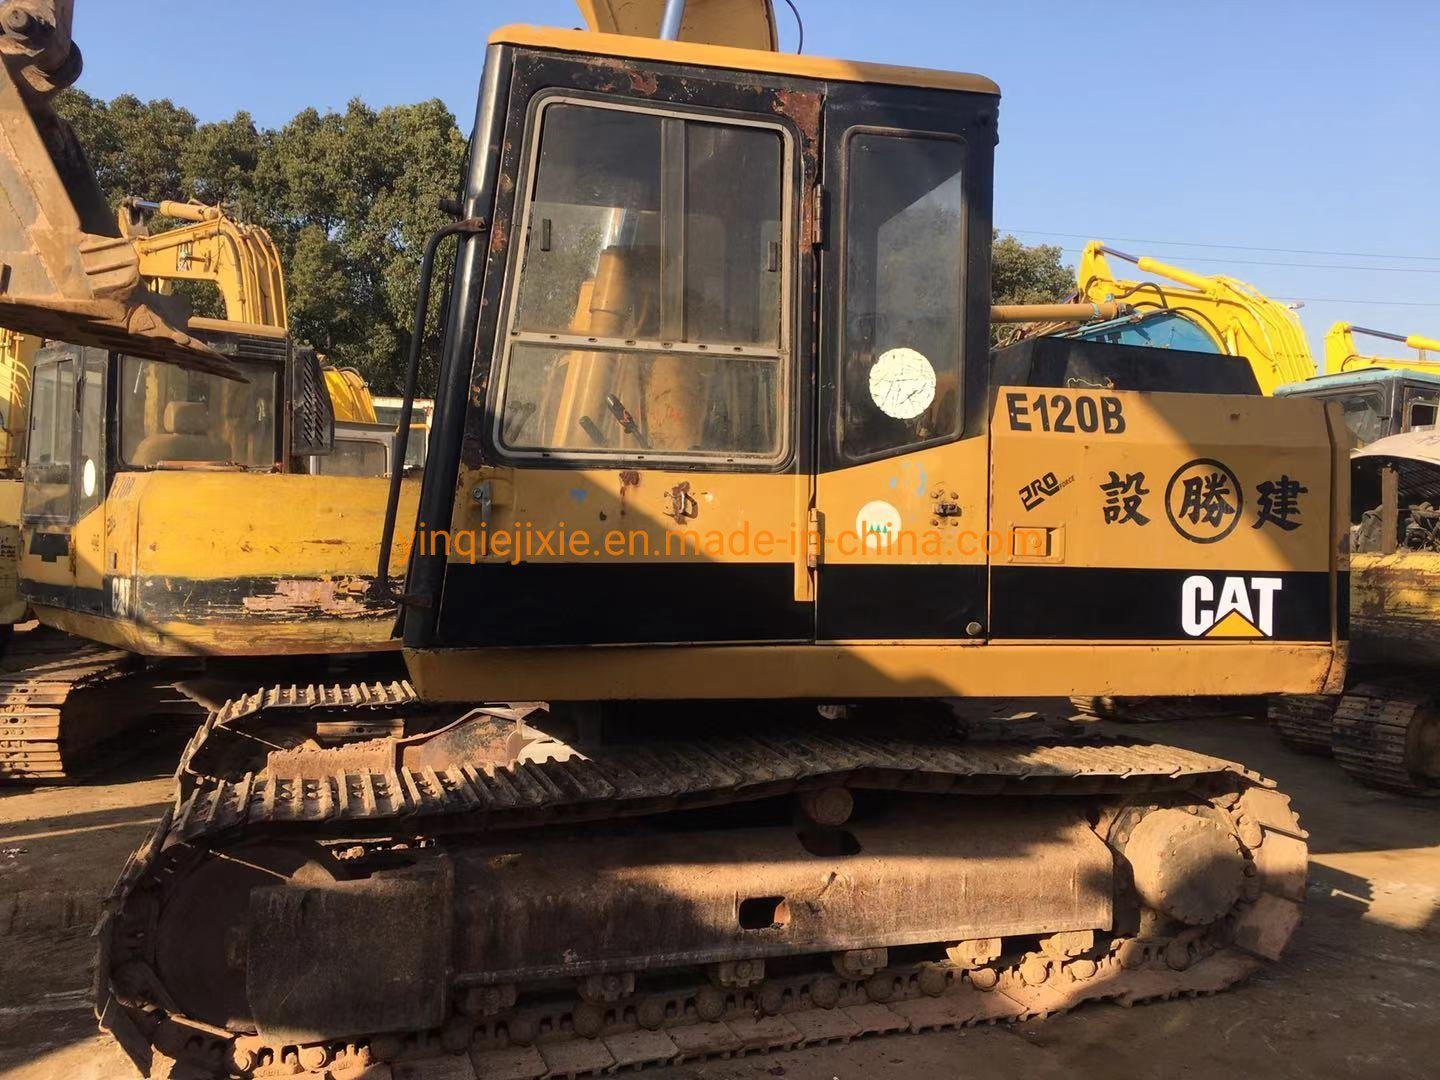 Used Cat E120b Excavator Caterpillar Excavator Cat E120b for Sale